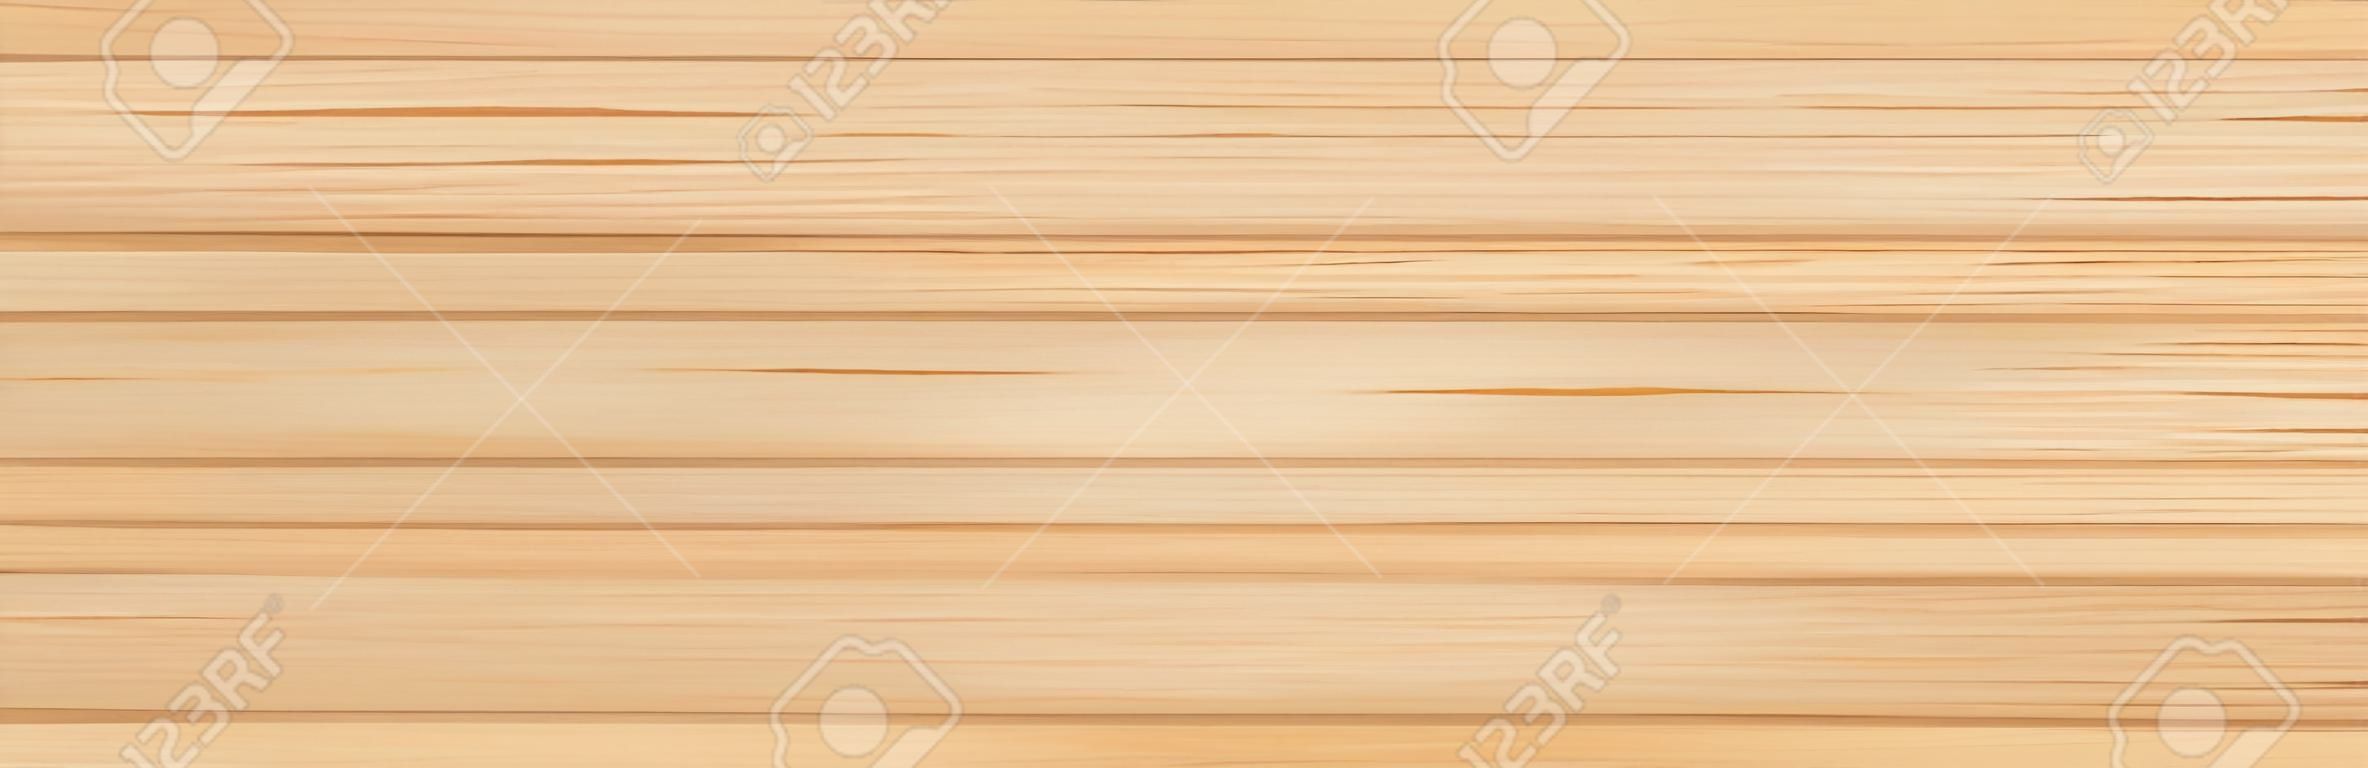 padrão de painel de madeira com belo resumo